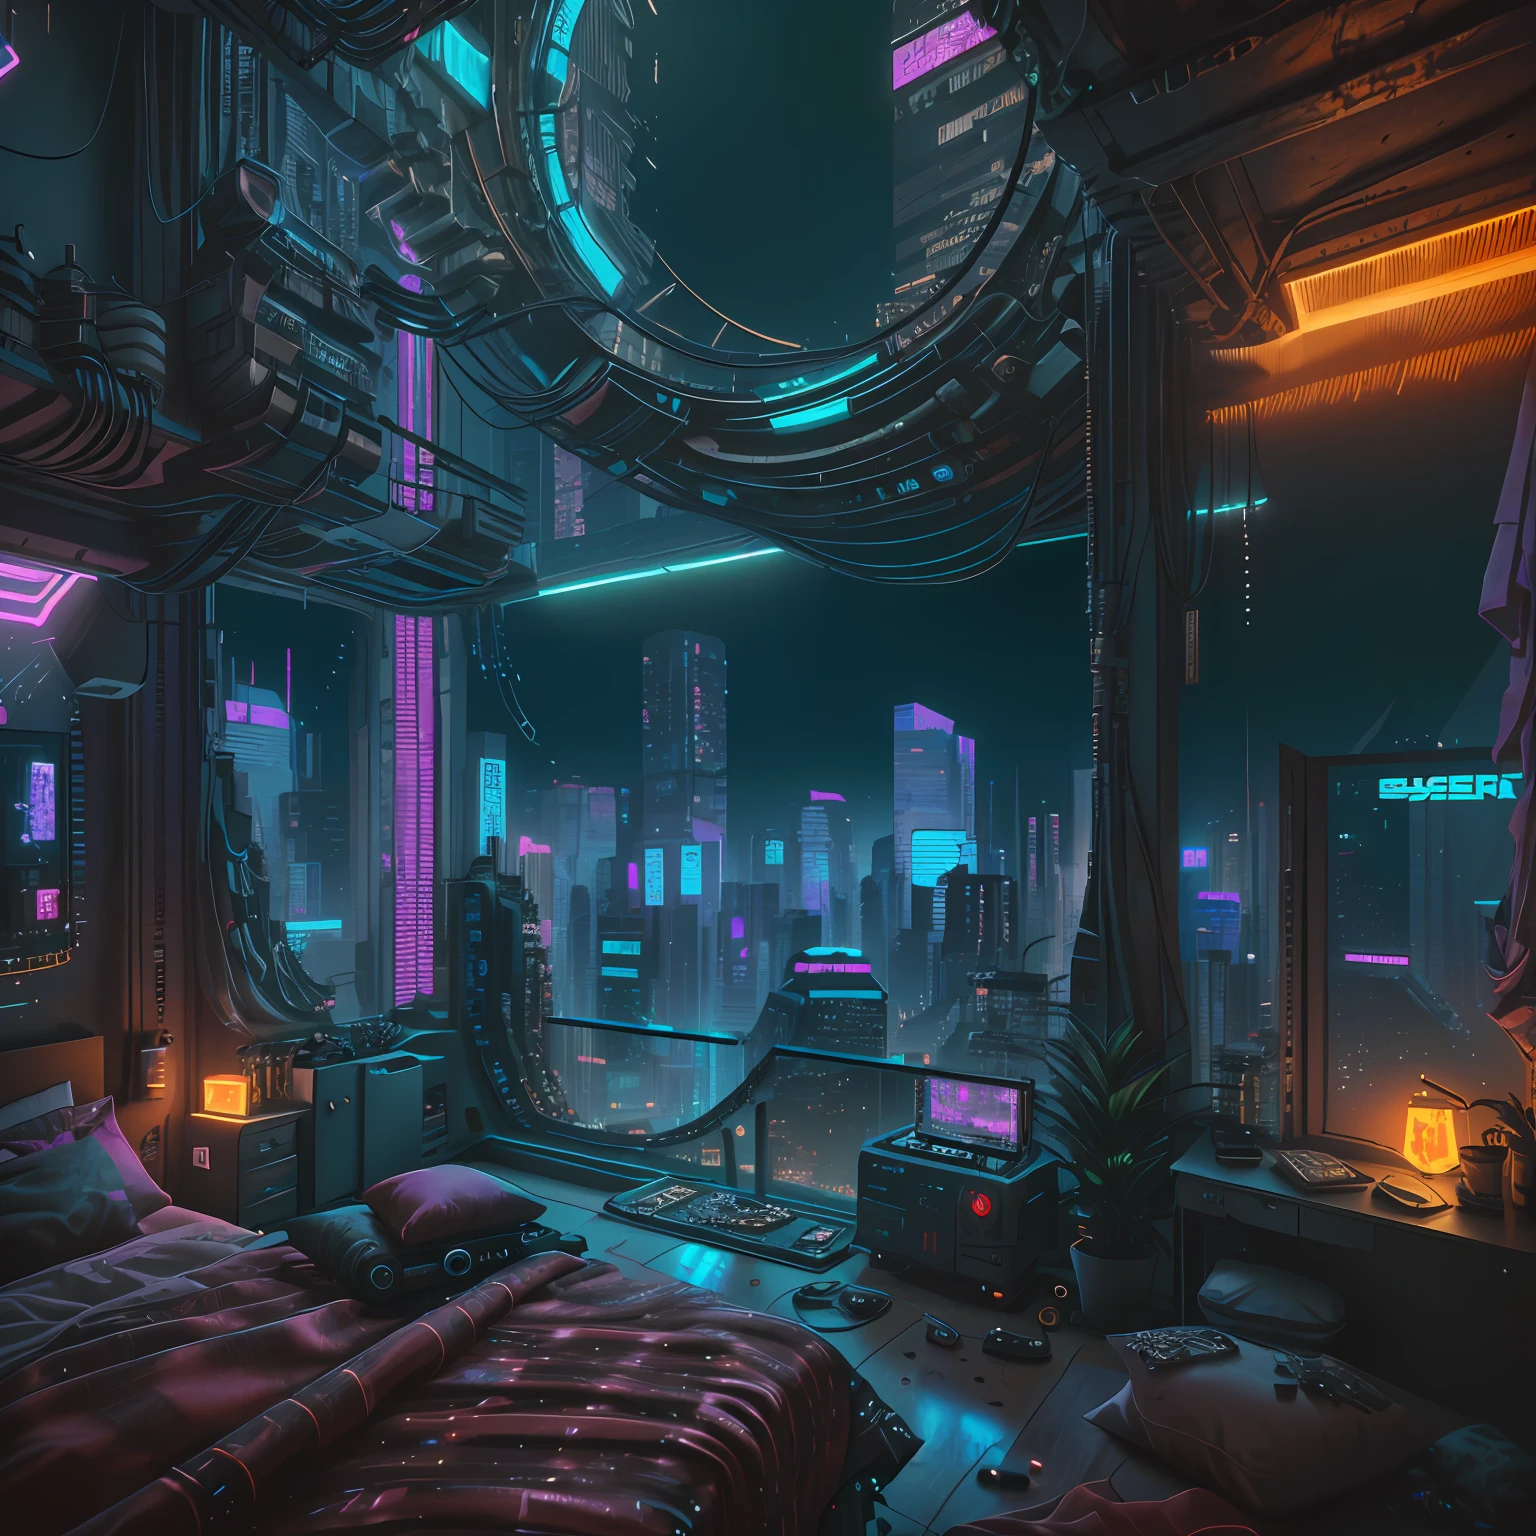 Es gibt ein Schlafzimmer mit einem Bett und einem Fenster mit Blick auf die Stadt, Cyberpunk-Schlafzimmer bei Nacht, cyberpunk teenager bedroom, Cyberpunk-Kinderzimmer, cyberpunk apartment, die Cyberpunk-Wohnung, cyberpunk art ultrarealistic 8k, cyberpunk dreamscape, 3D-Rendering von Beeple, hyper-realistic cyberpunk style, in a cyberpunk themed room, cyberpunk interior, cyberpunk setting